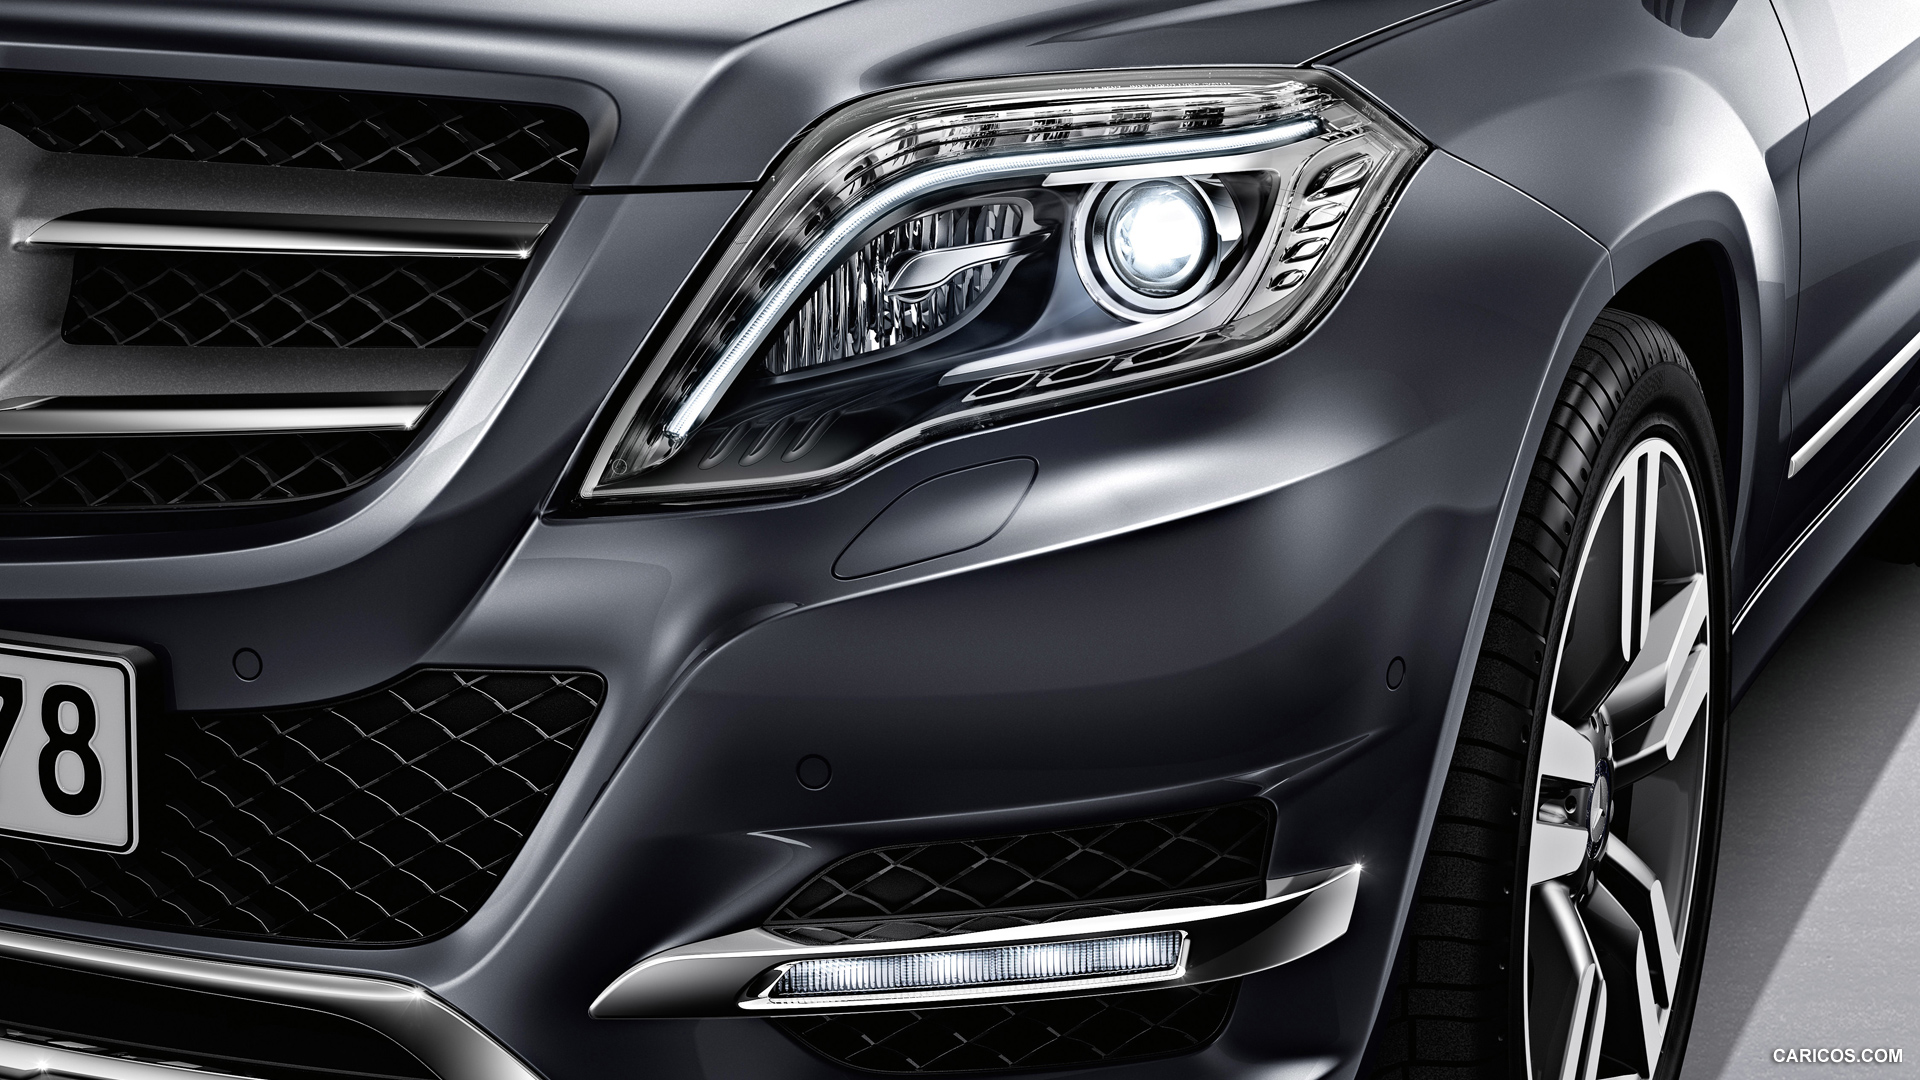 Mercedes-Benz GLK-Class (2013) - Headlight